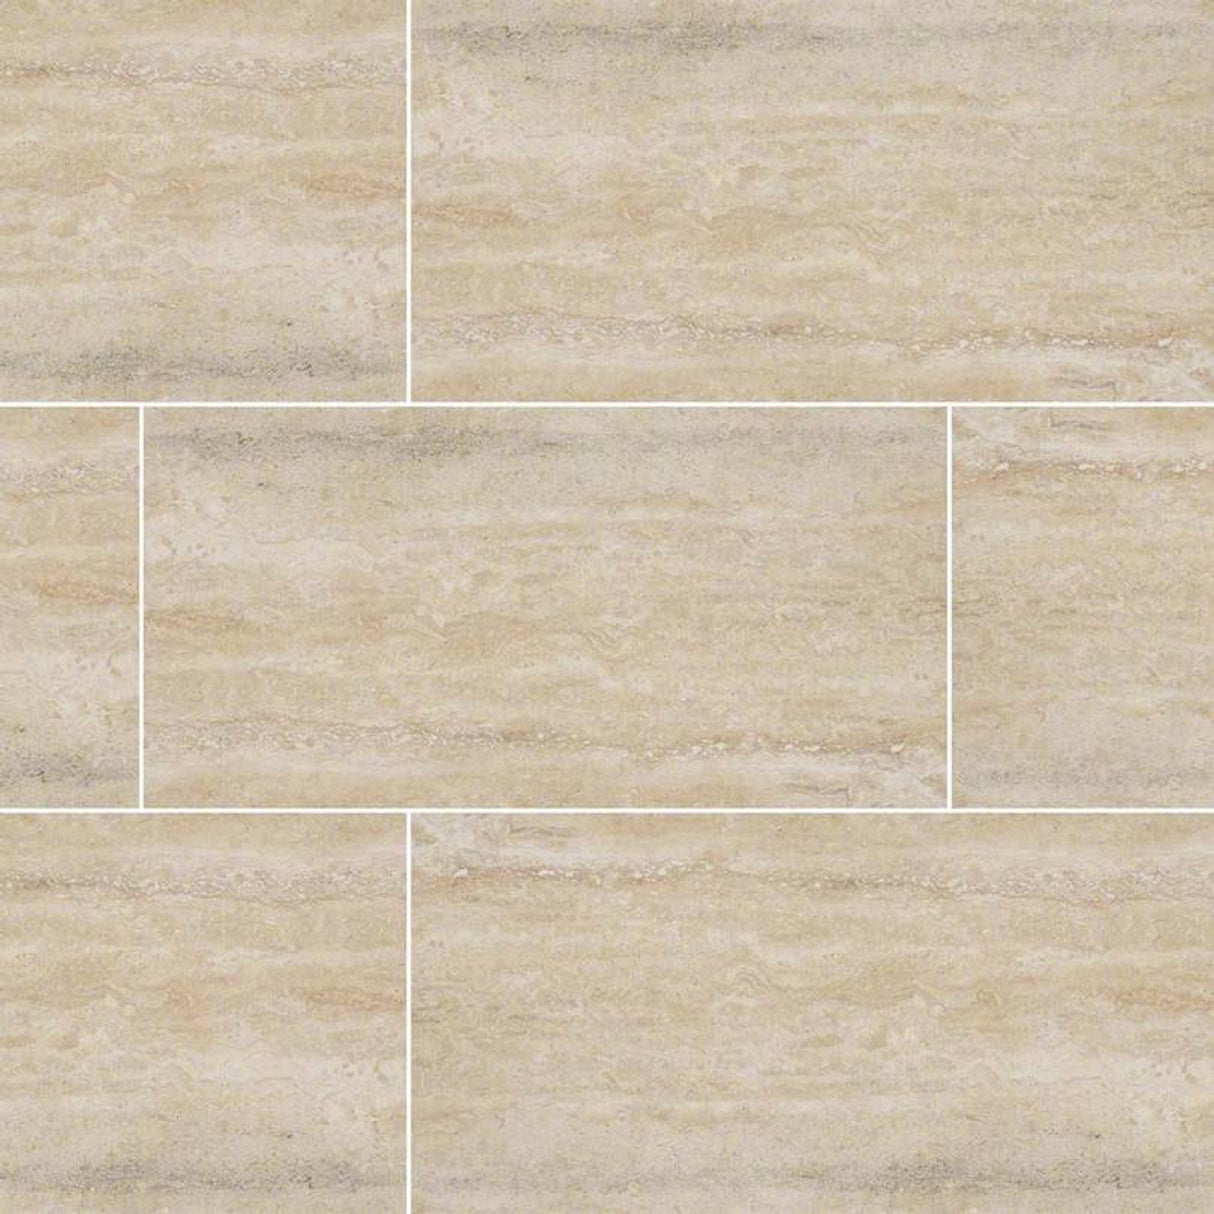 Veneto Sand 12â€³x24â€³ Glazed Porcelain Floor and Wall Tile - MSI Collection VENETO SAND 12X24 (Case)